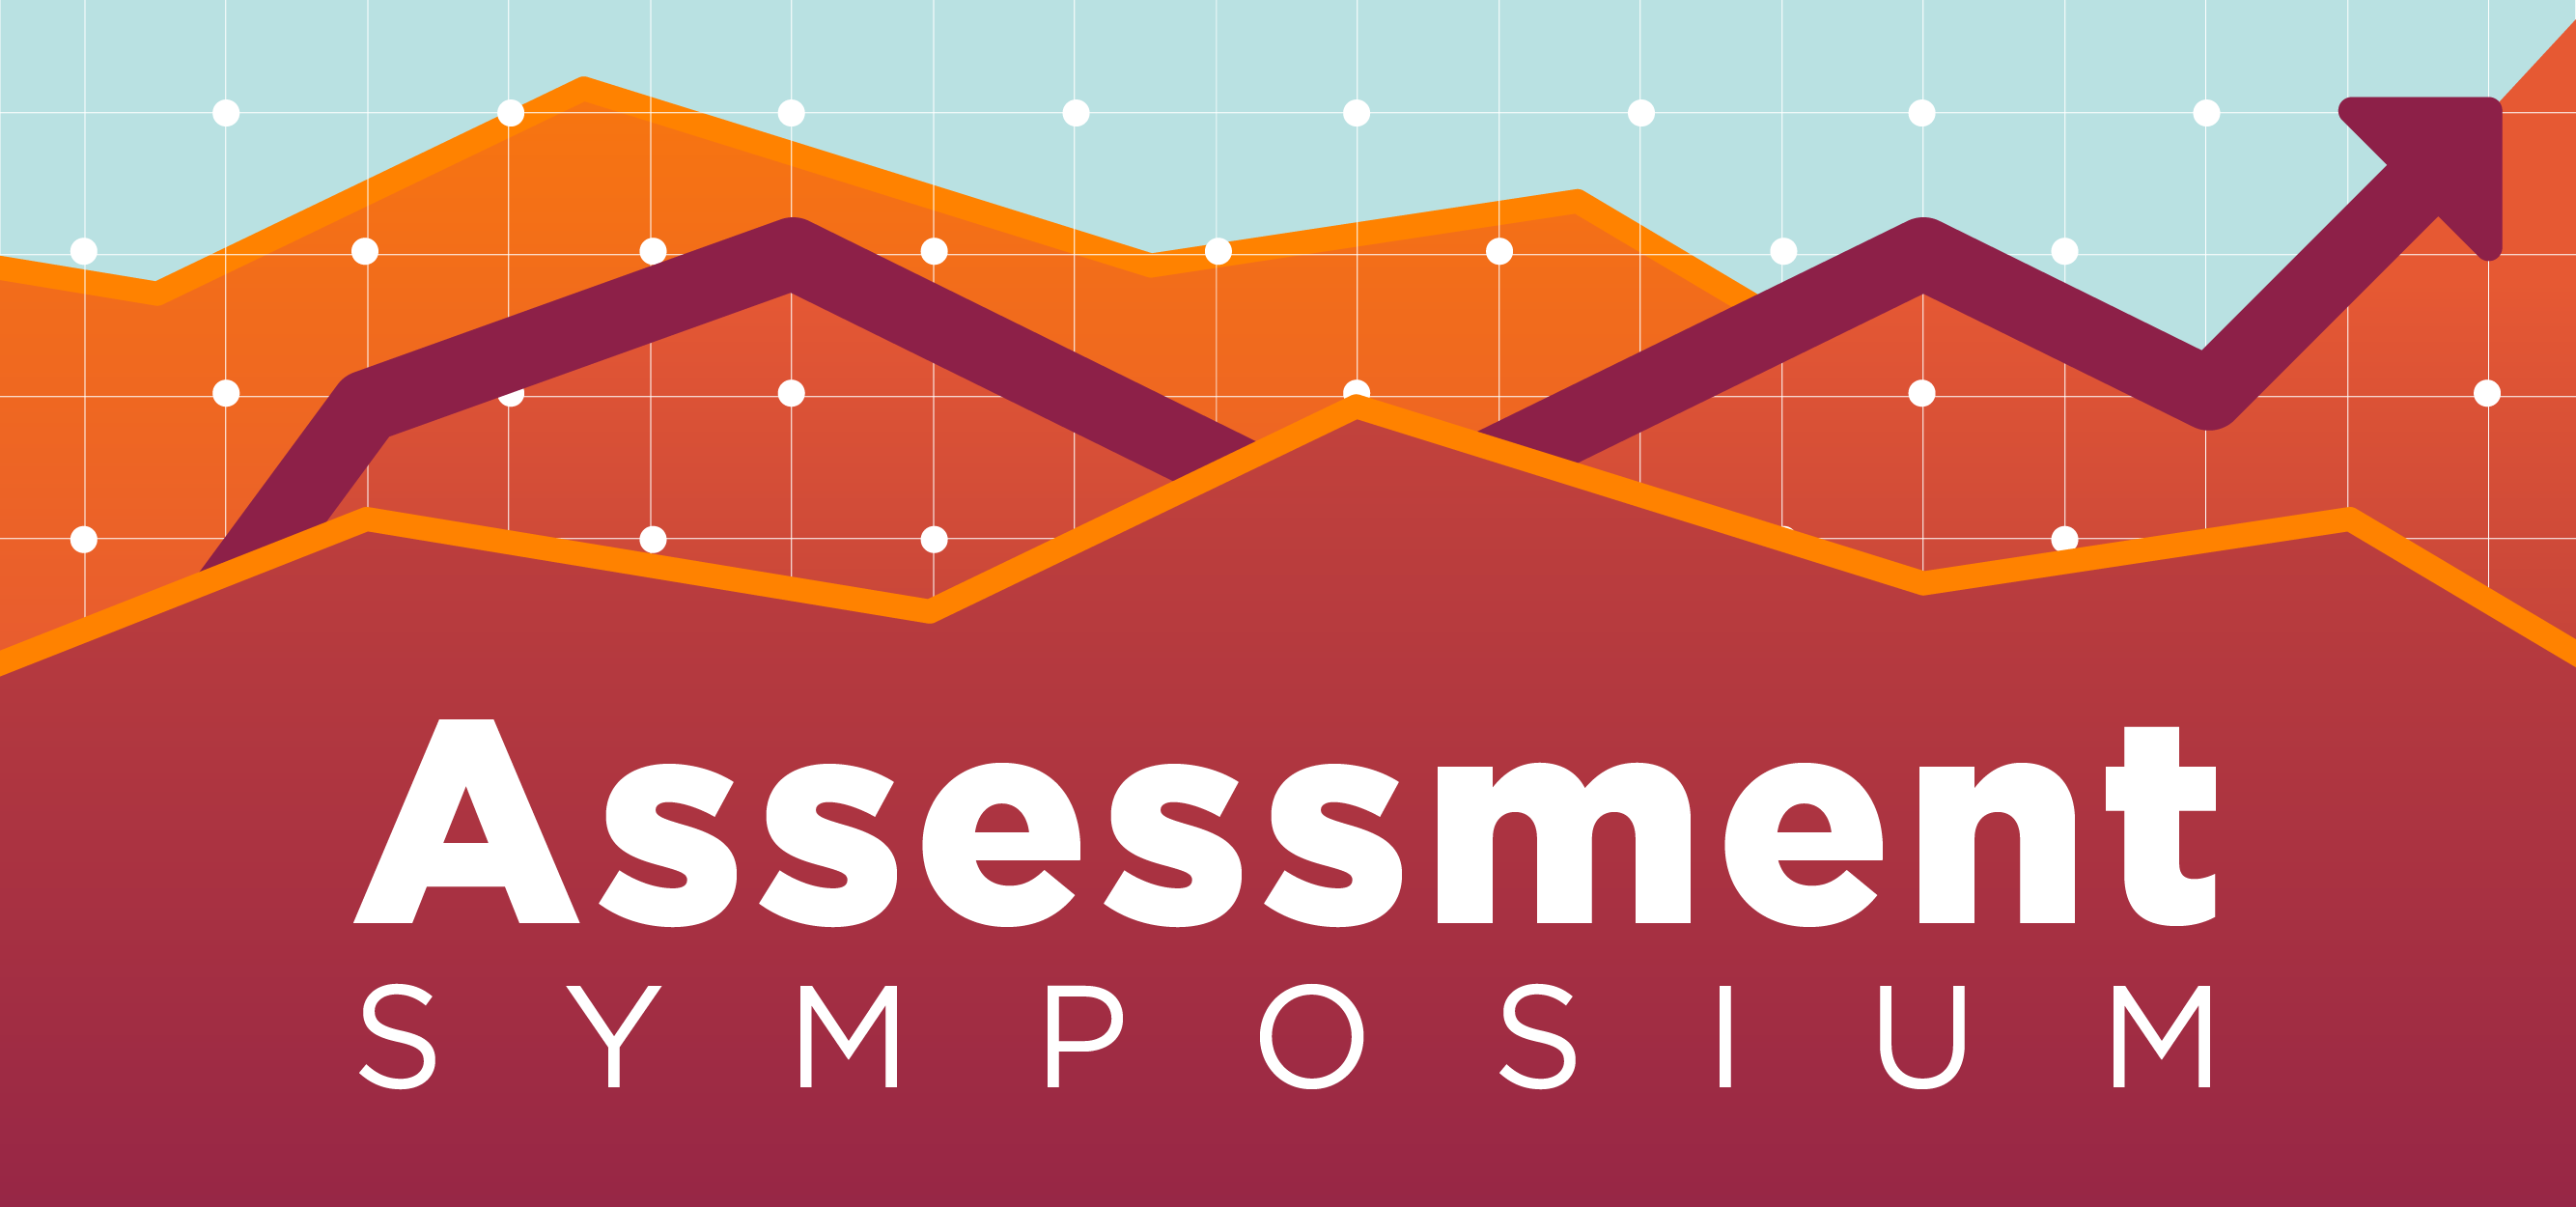 Assessment Symposium 2019